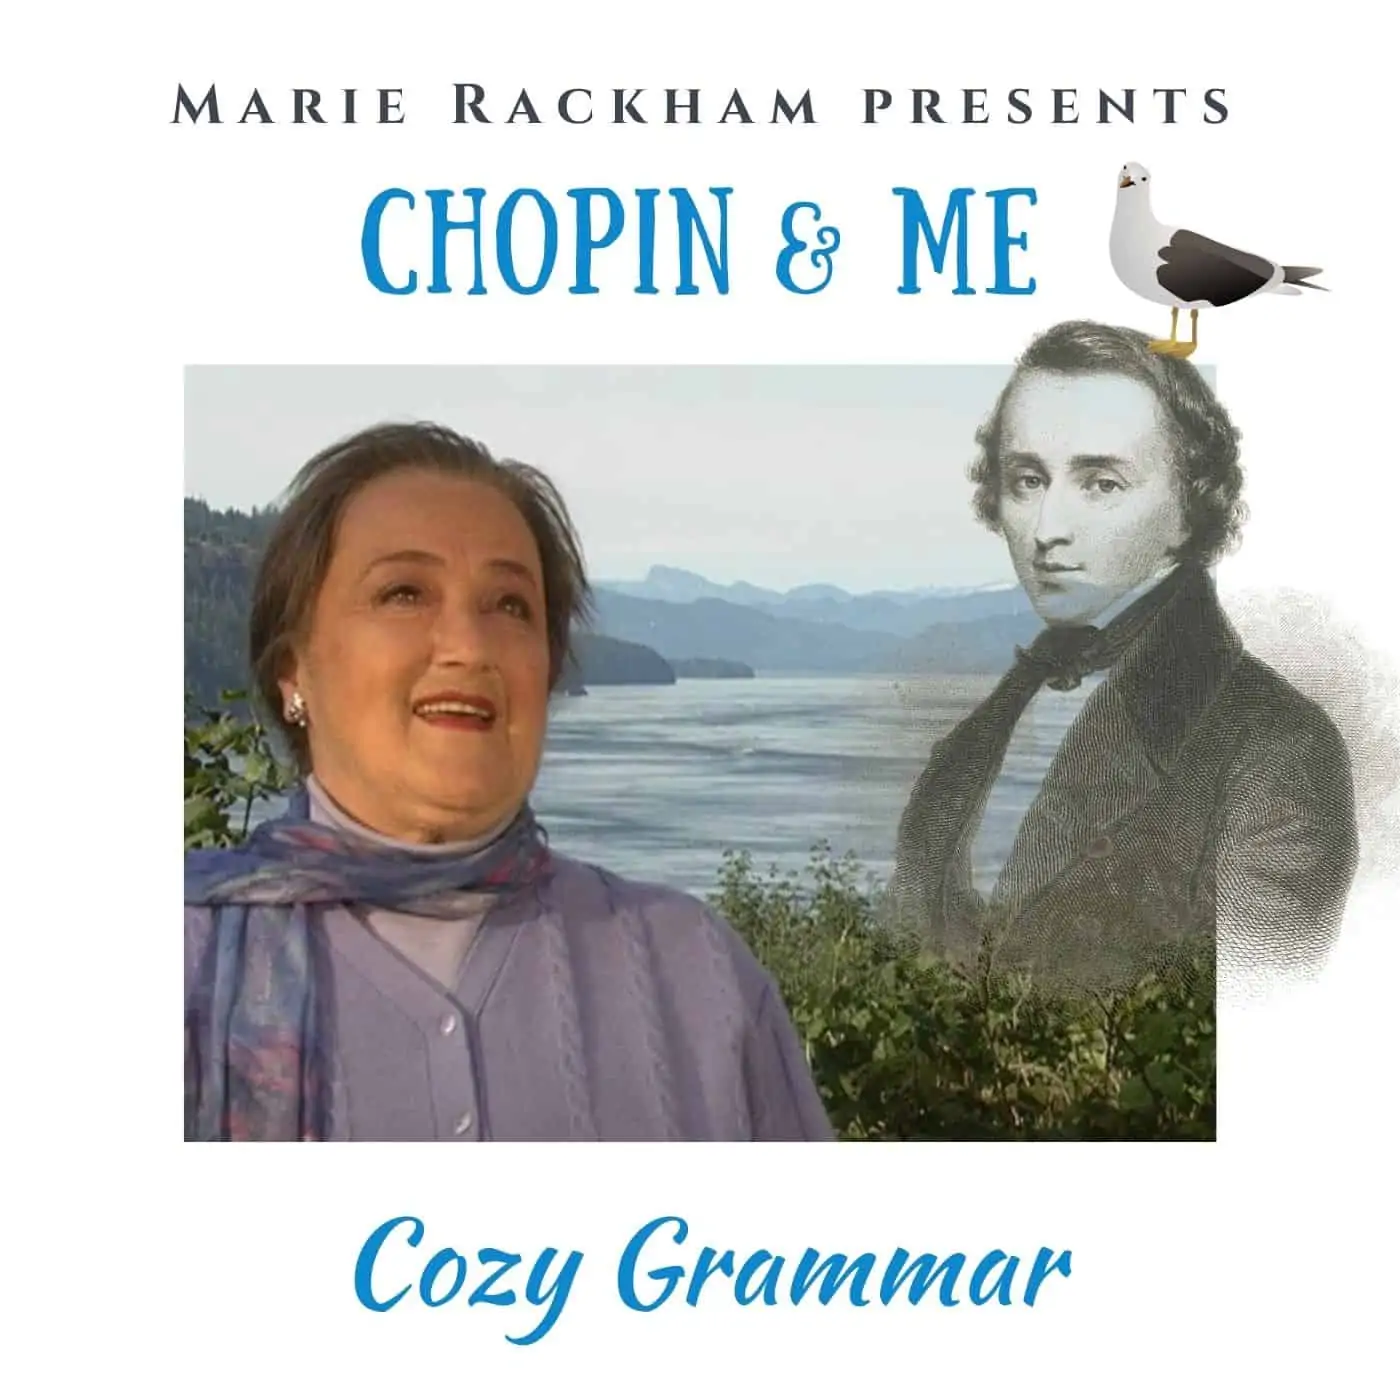 Chopin & Me